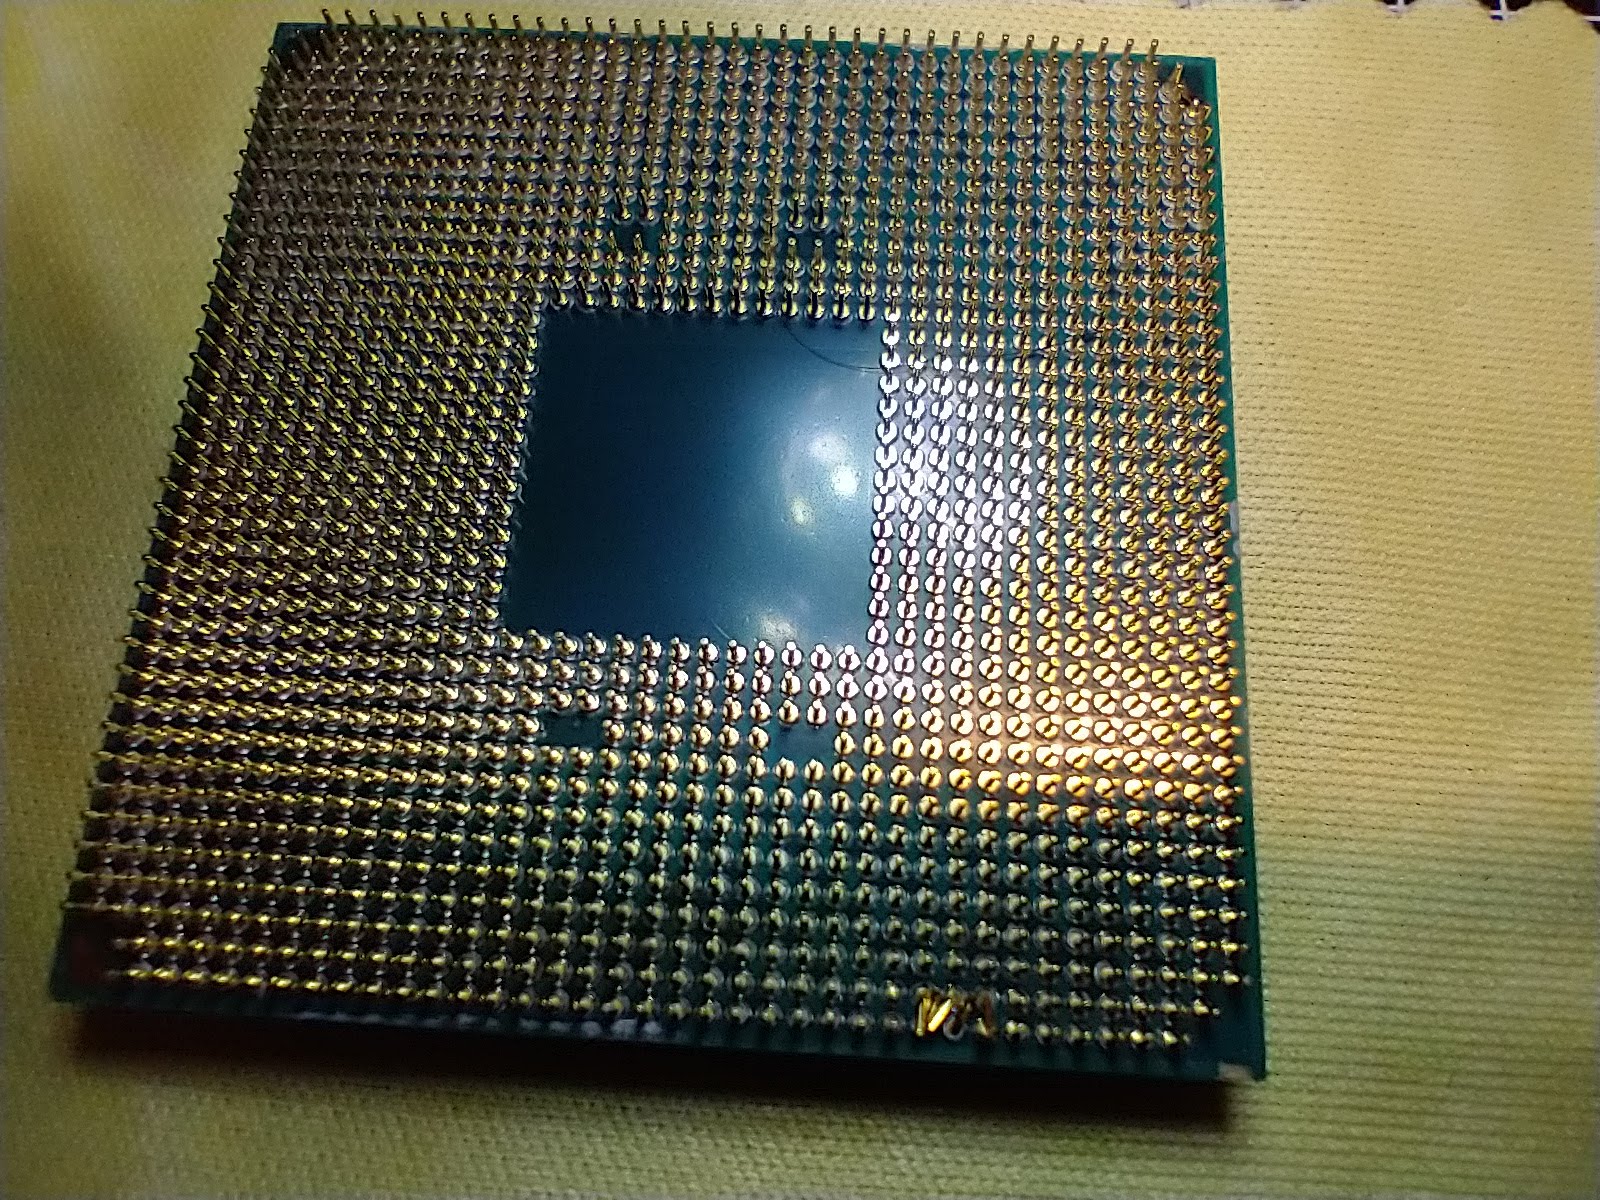 Bent CPU pins